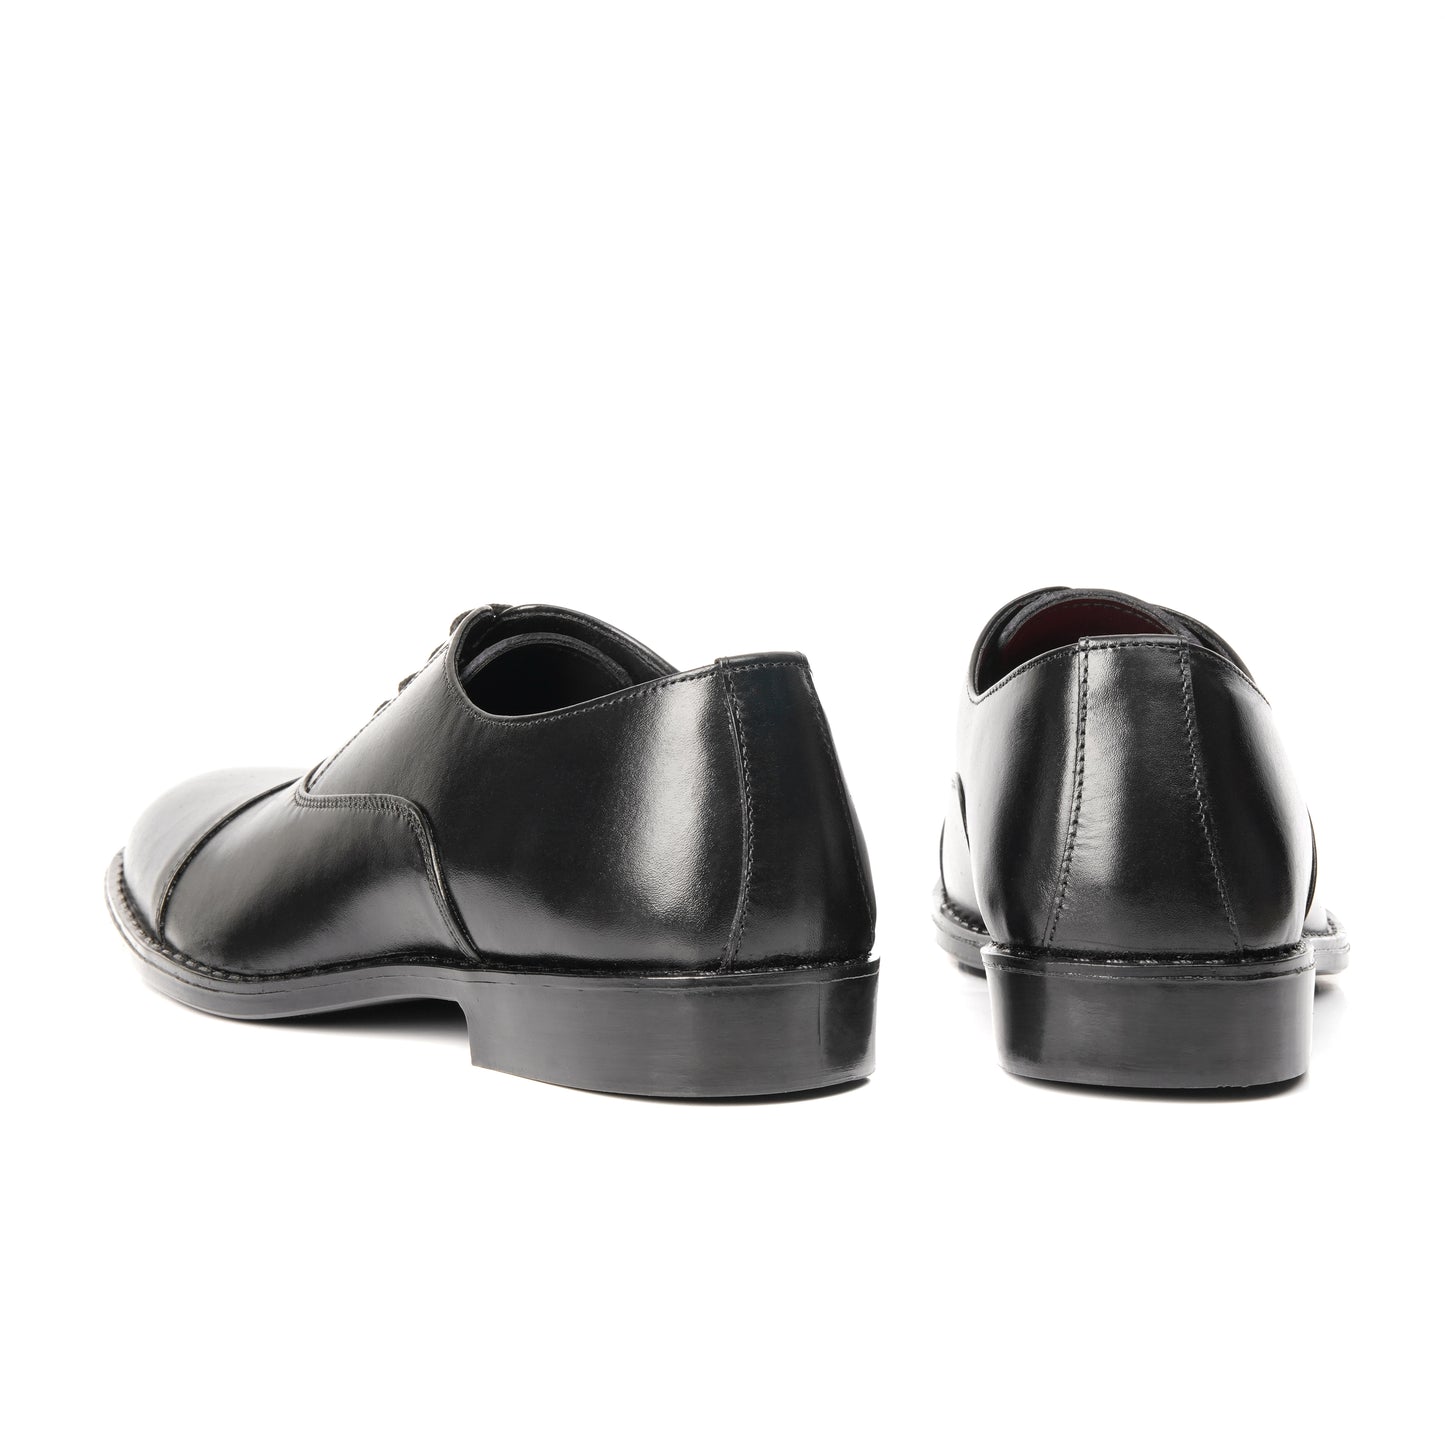 CS005-Black Cow Leather Oxford Laces Shoes